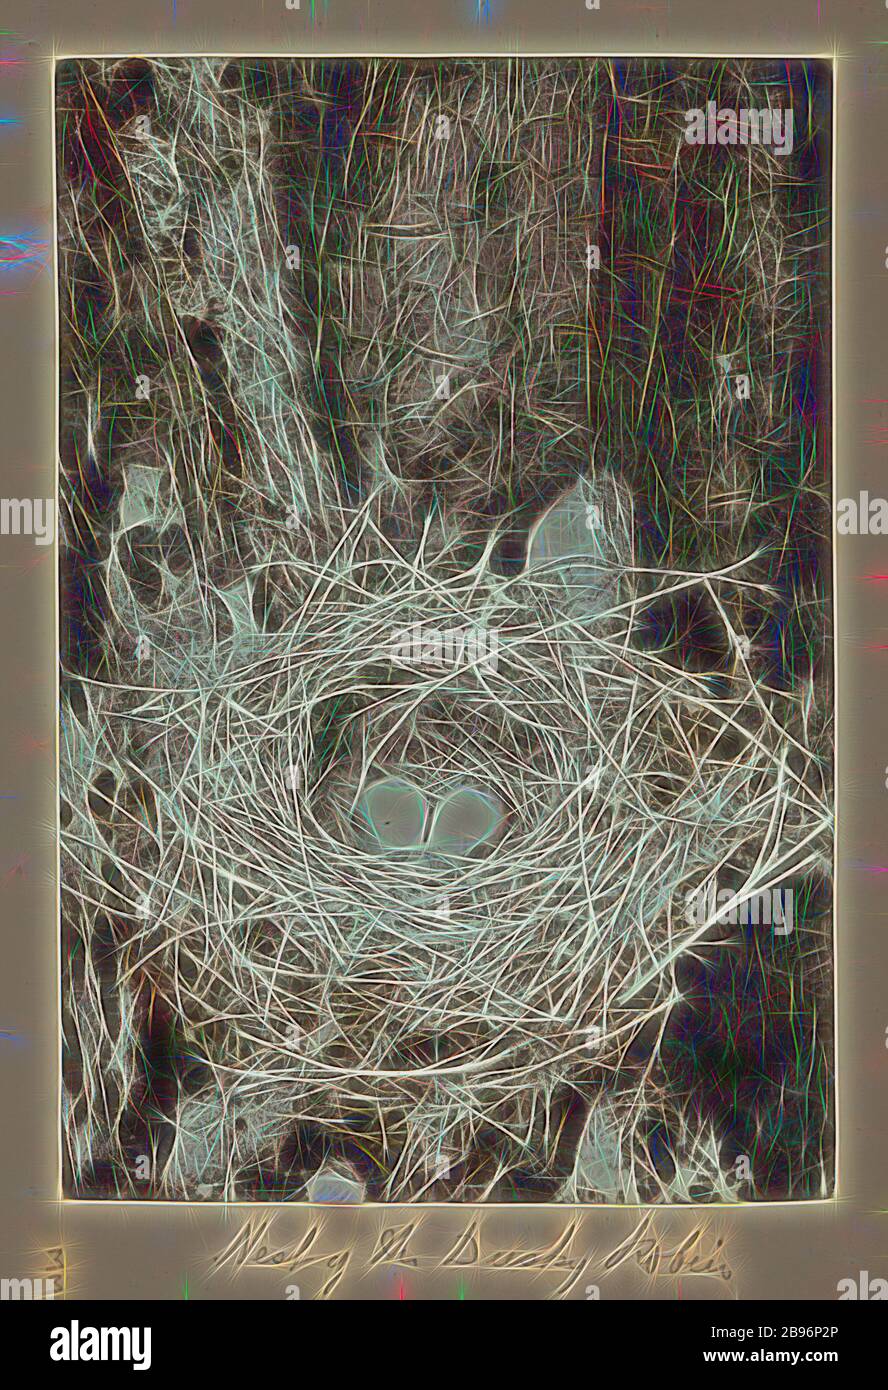 Photo - Nest de Robin Ducky (Melanodryas vittata), Groupe Furneaux, détroit de Bass, 1893, Une des soixante-neuf photographies en noir et blanc et en sépia dans un album lié [dont six sont lâches] prises par un J Campbell lors d'une expédition scientifique du Field Naturalistes Club of Victoria au groupe Furneaux, détroit de Bass, en 1893., repensée par Gibon, conception d'un brillant chaleureux et joyeux de la luminosité et des rayons de lumière radiance. L'art classique réinventé avec une touche moderne. La photographie inspirée du futurisme, qui embrasse l'énergie dynamique de la technologie moderne, du mouvement, de la vitesse et de la révolution Banque D'Images